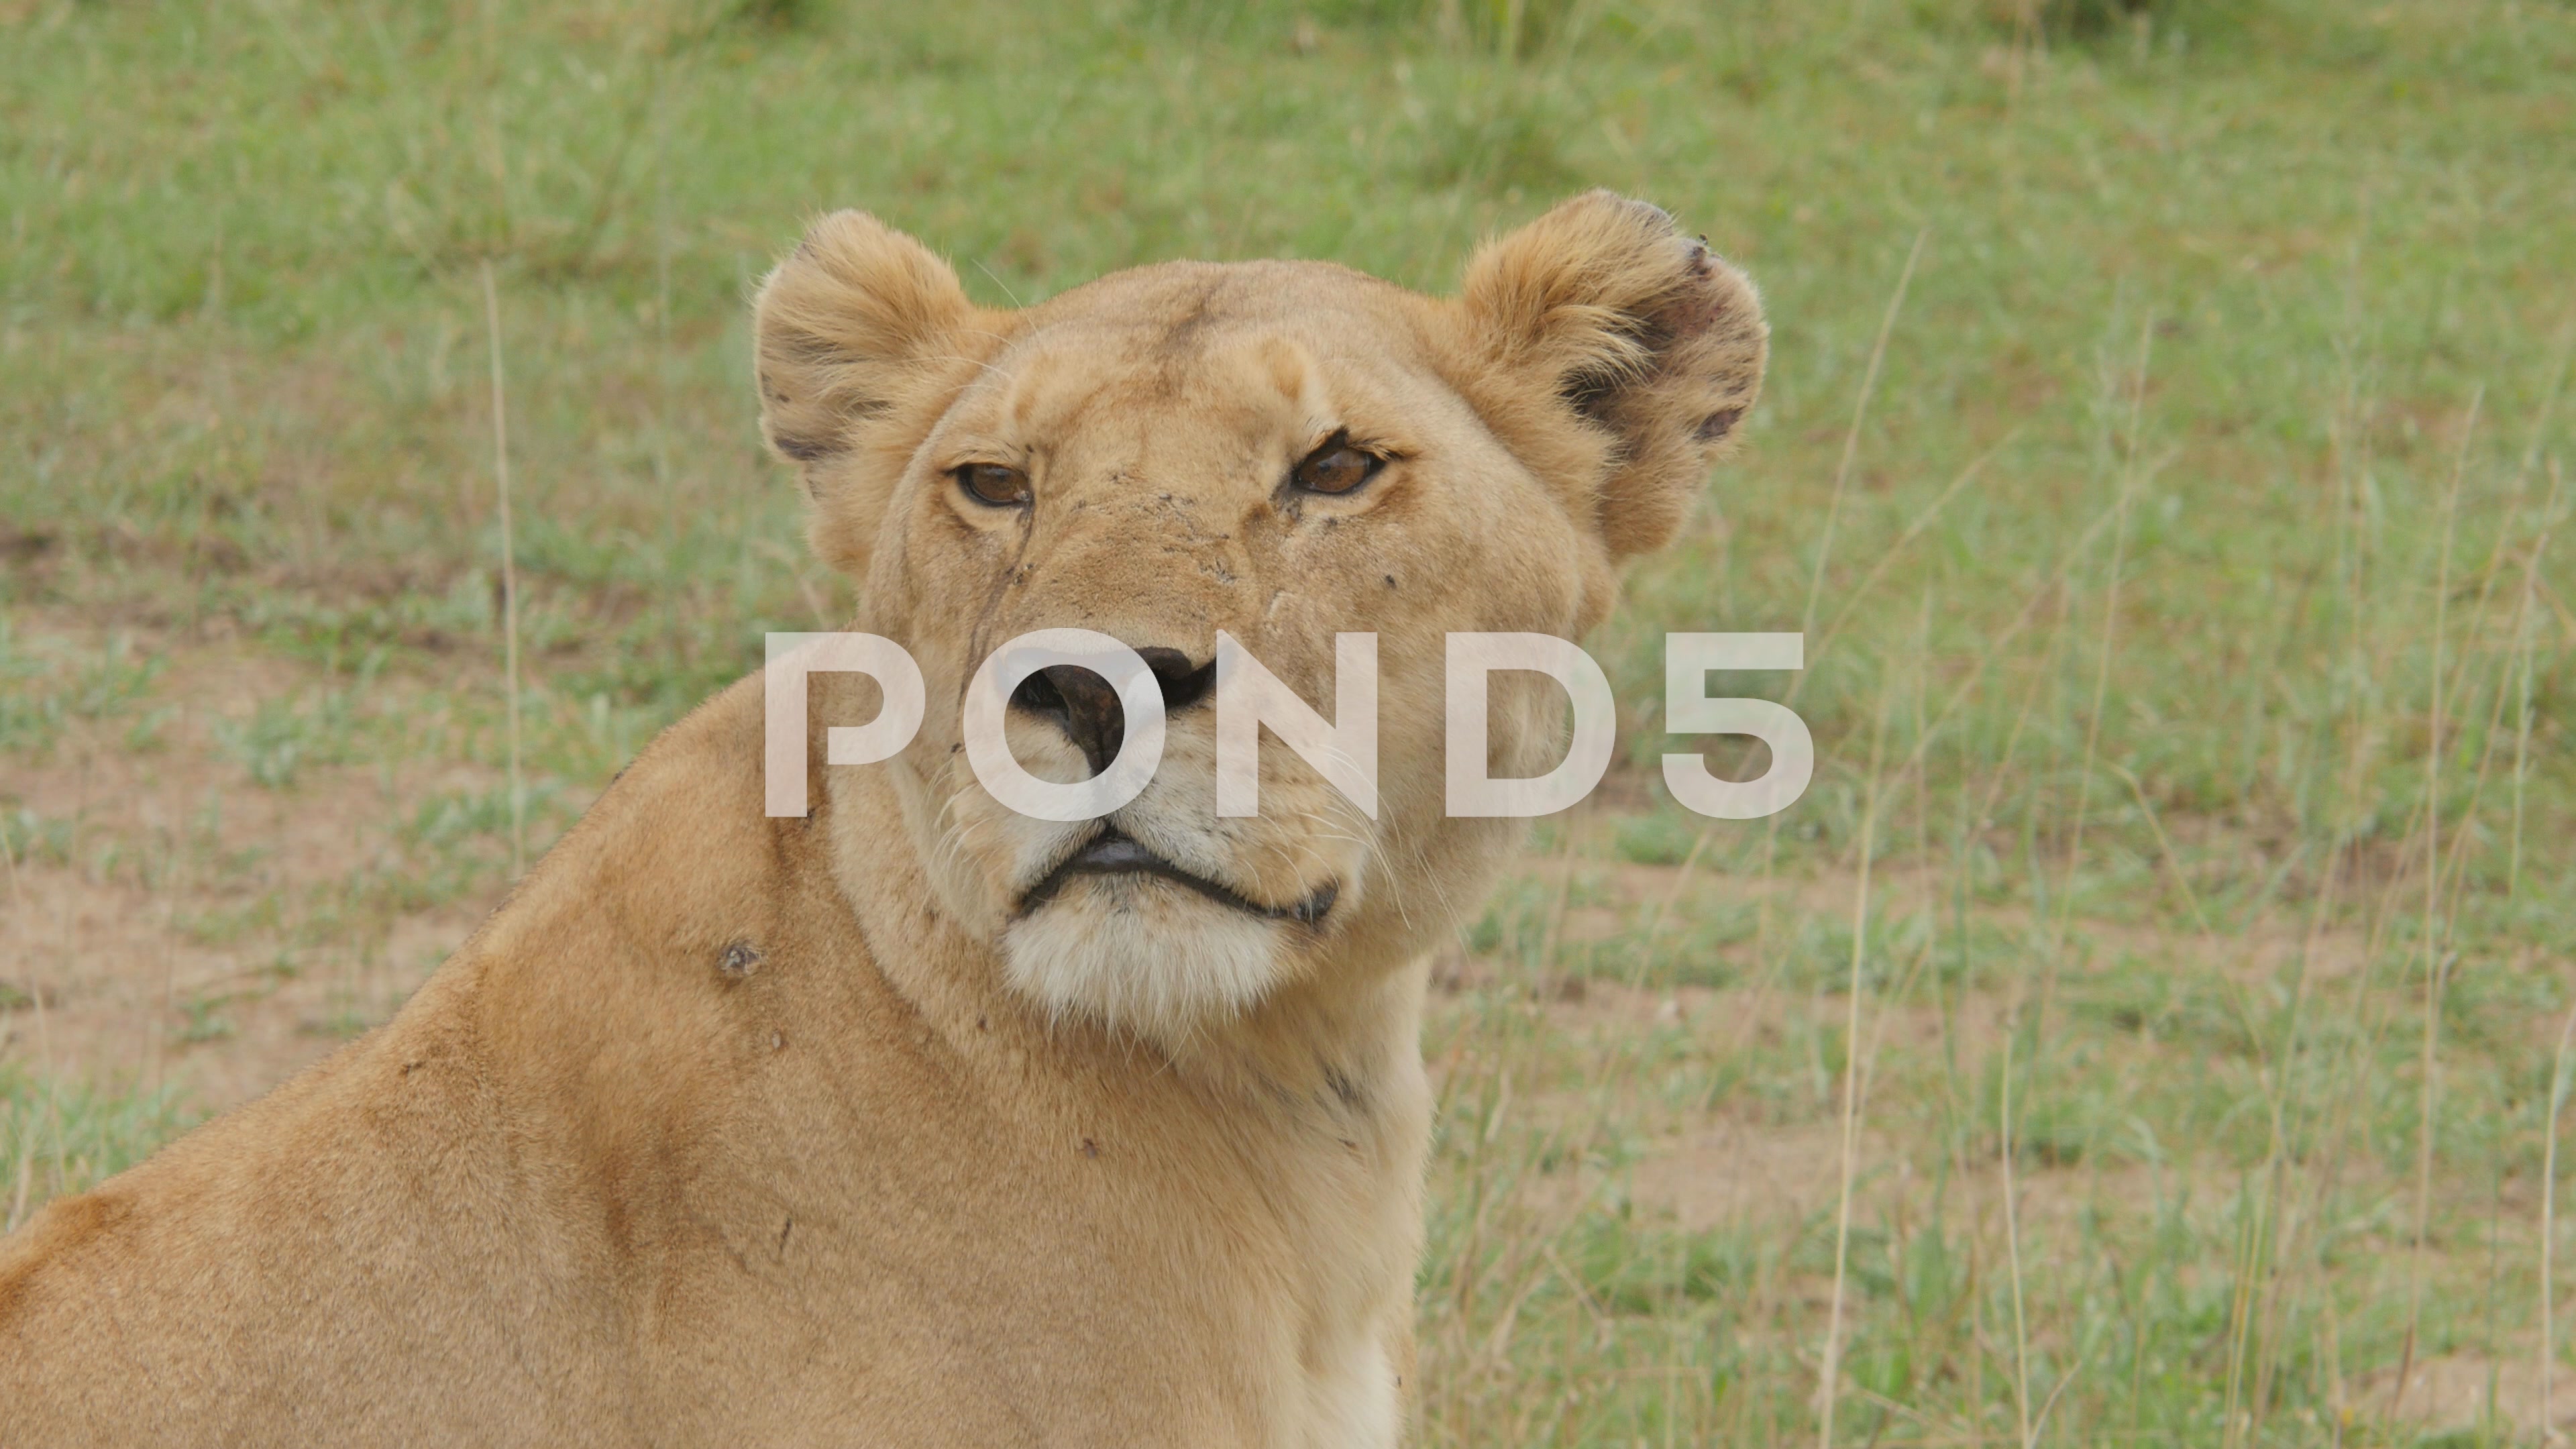 Wild lioness photo